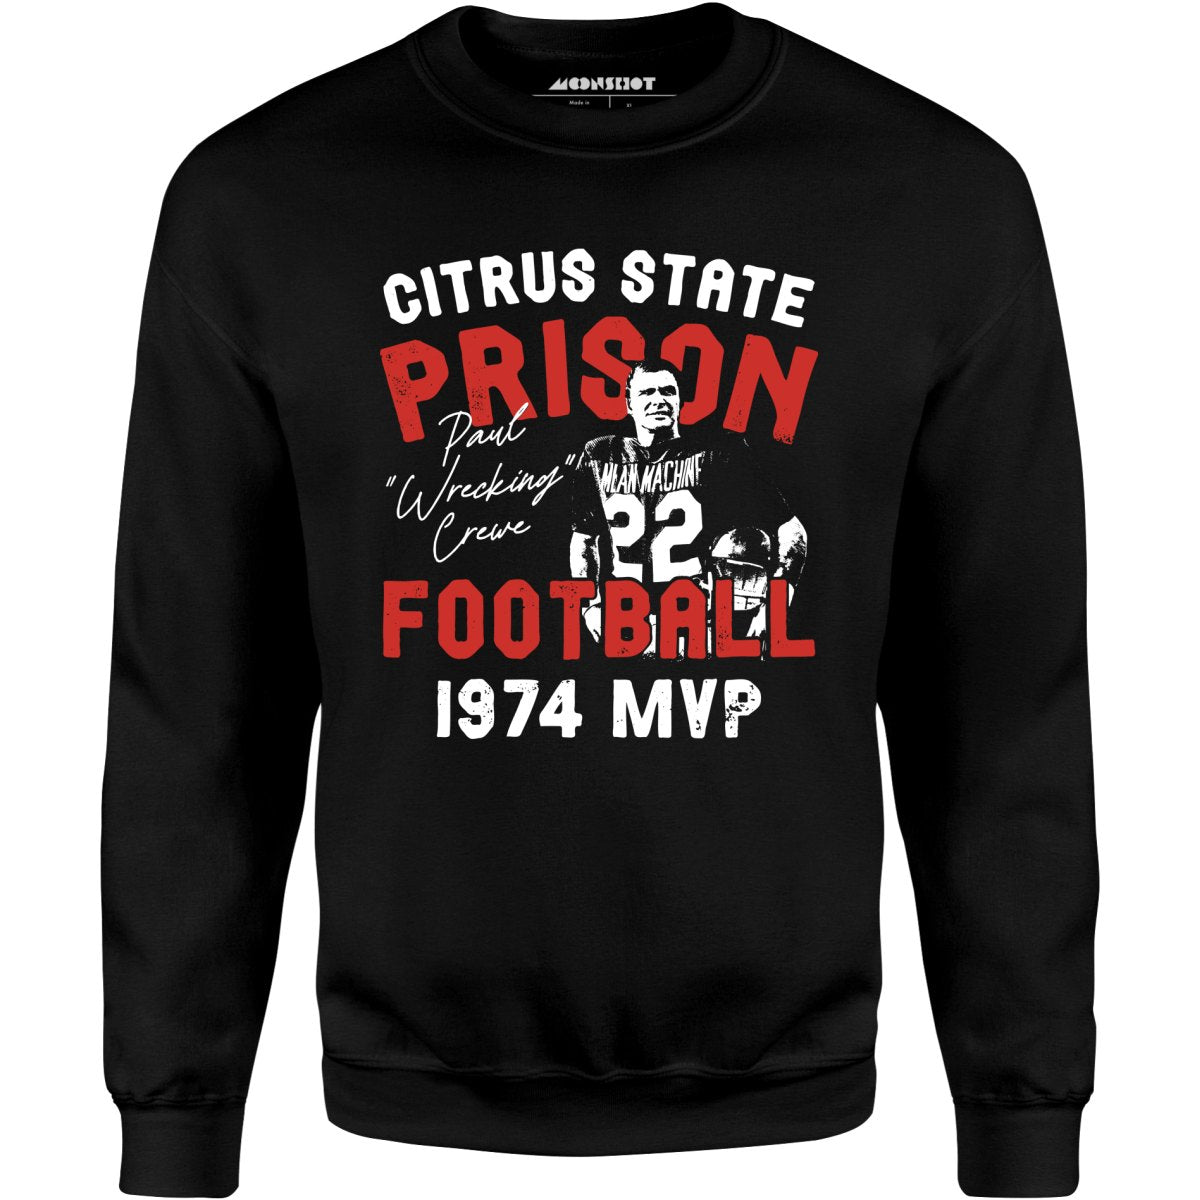 Mean Machine Citrus State Prison Football - Unisex Sweatshirt